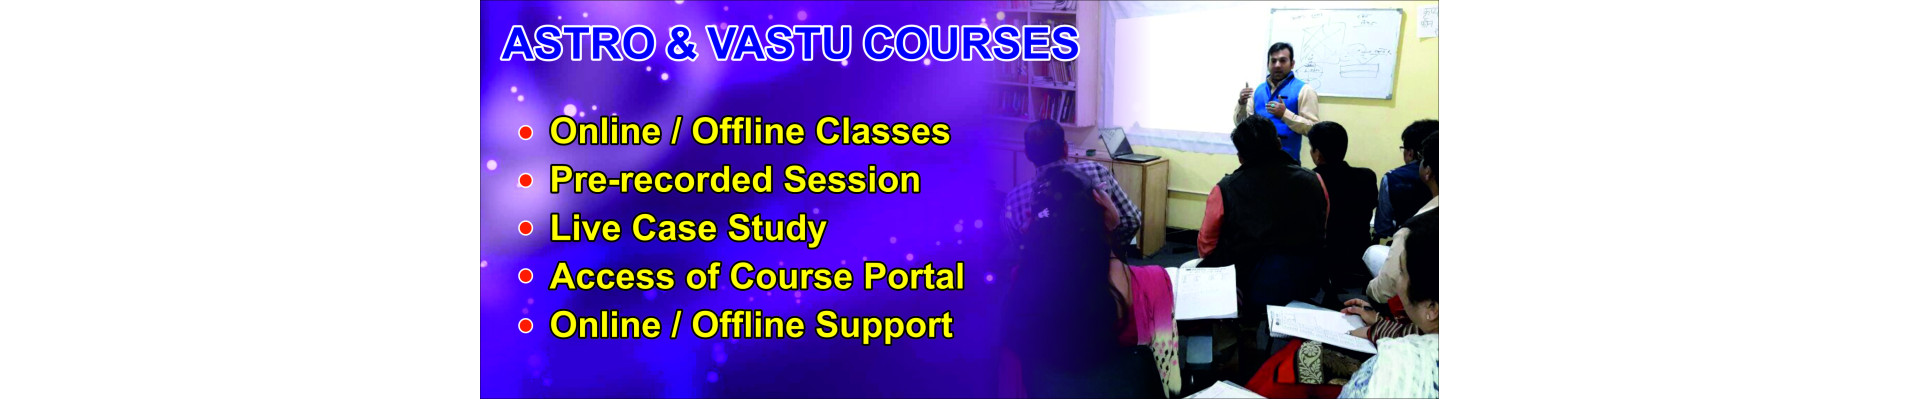 Astro & Vastu Courses